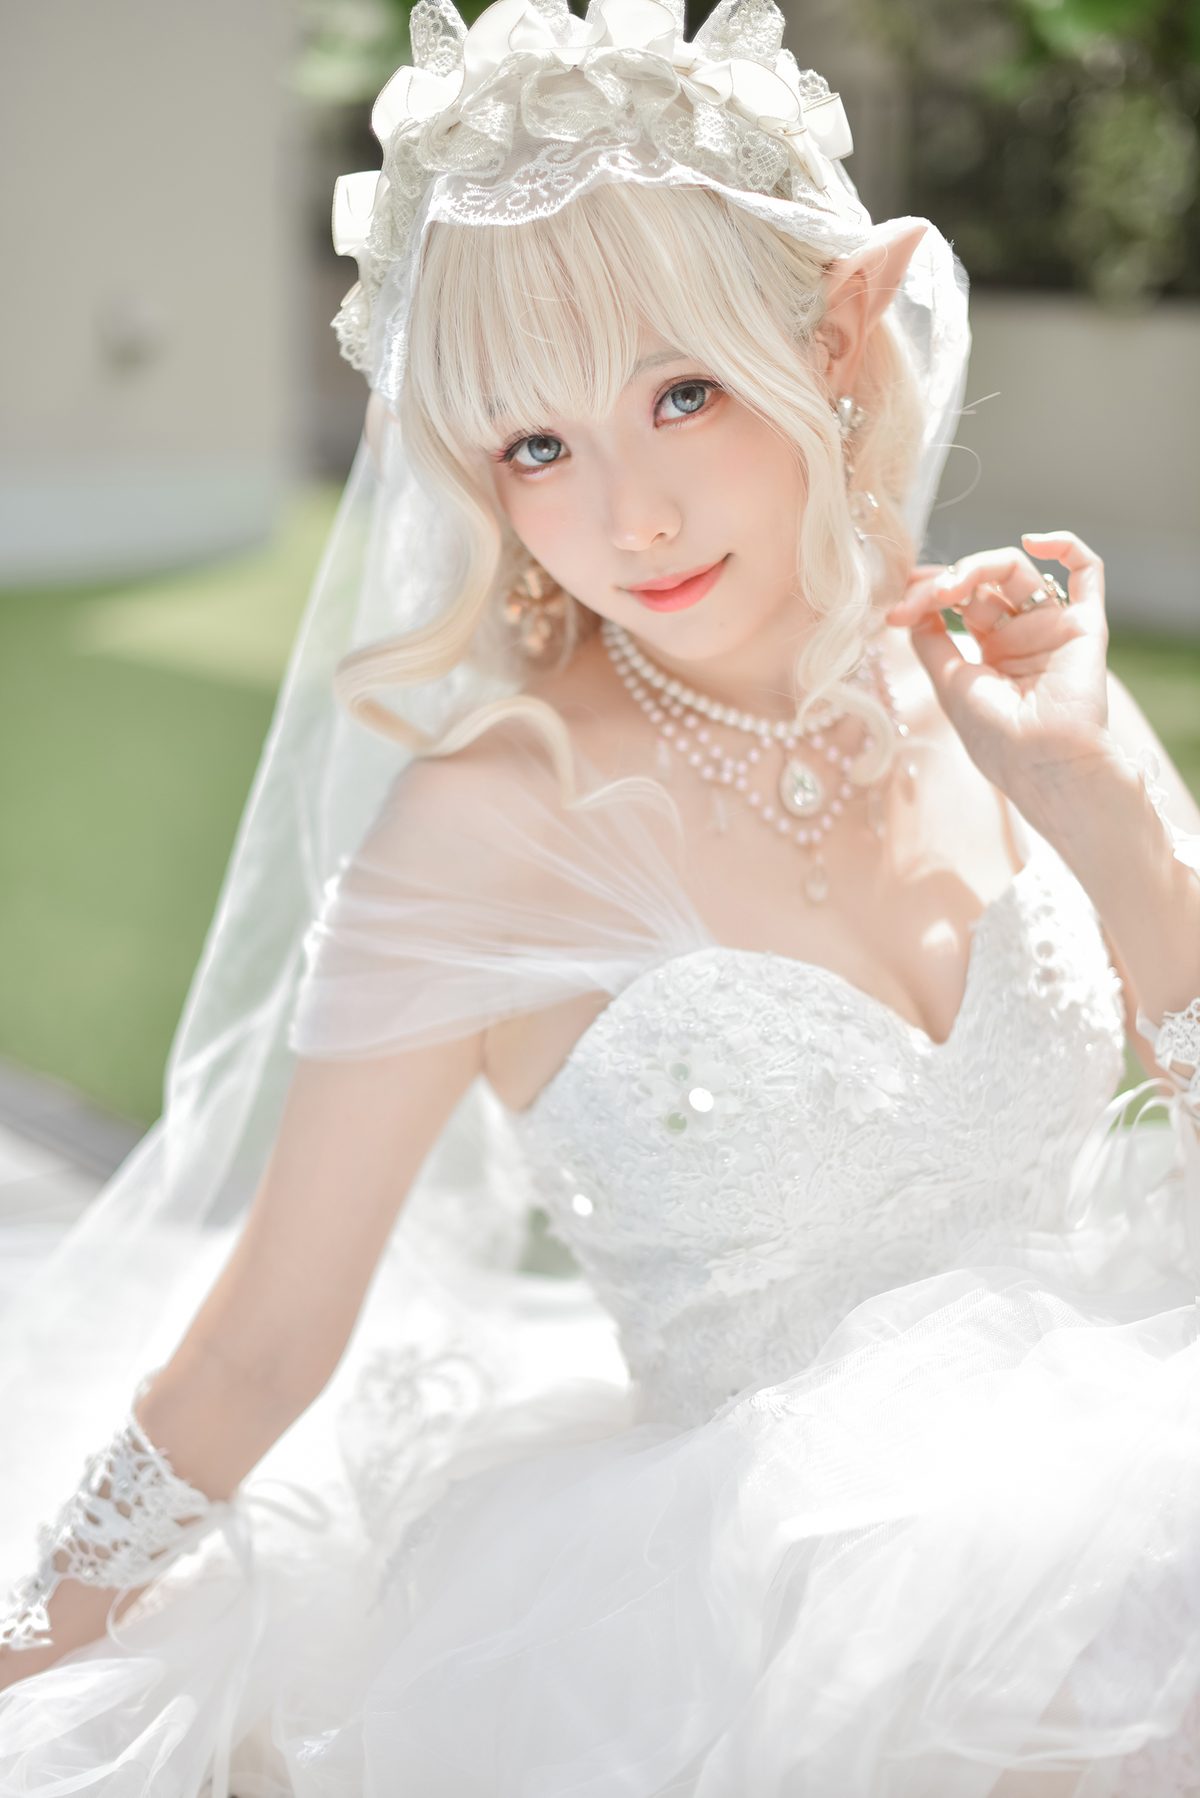 Coser@Ely_eee ElyEE子 Bride And Lingerie 0035 0362920283.jpg